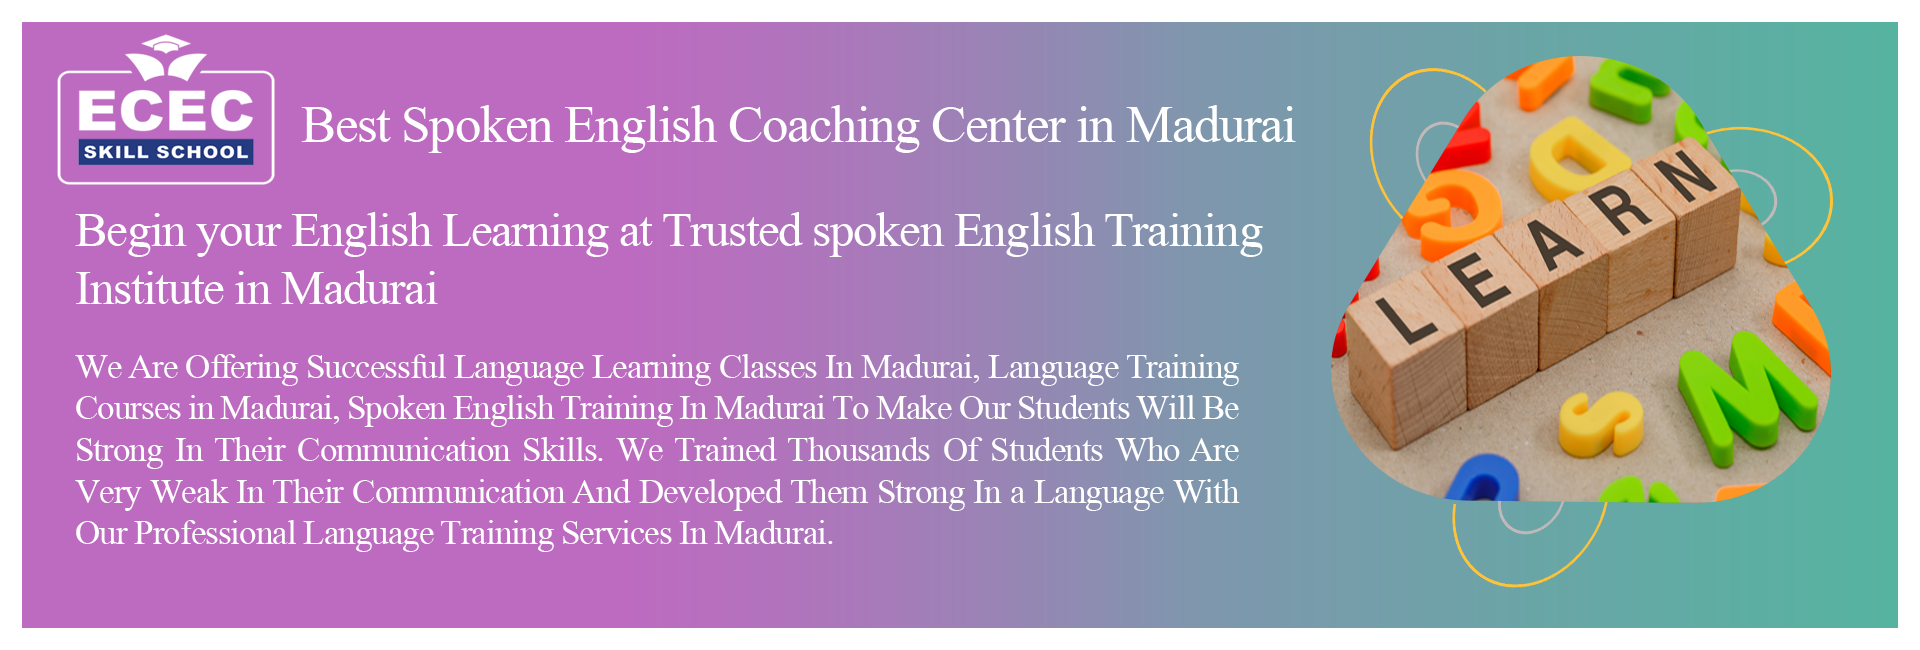 Coaching Classes in Madurai